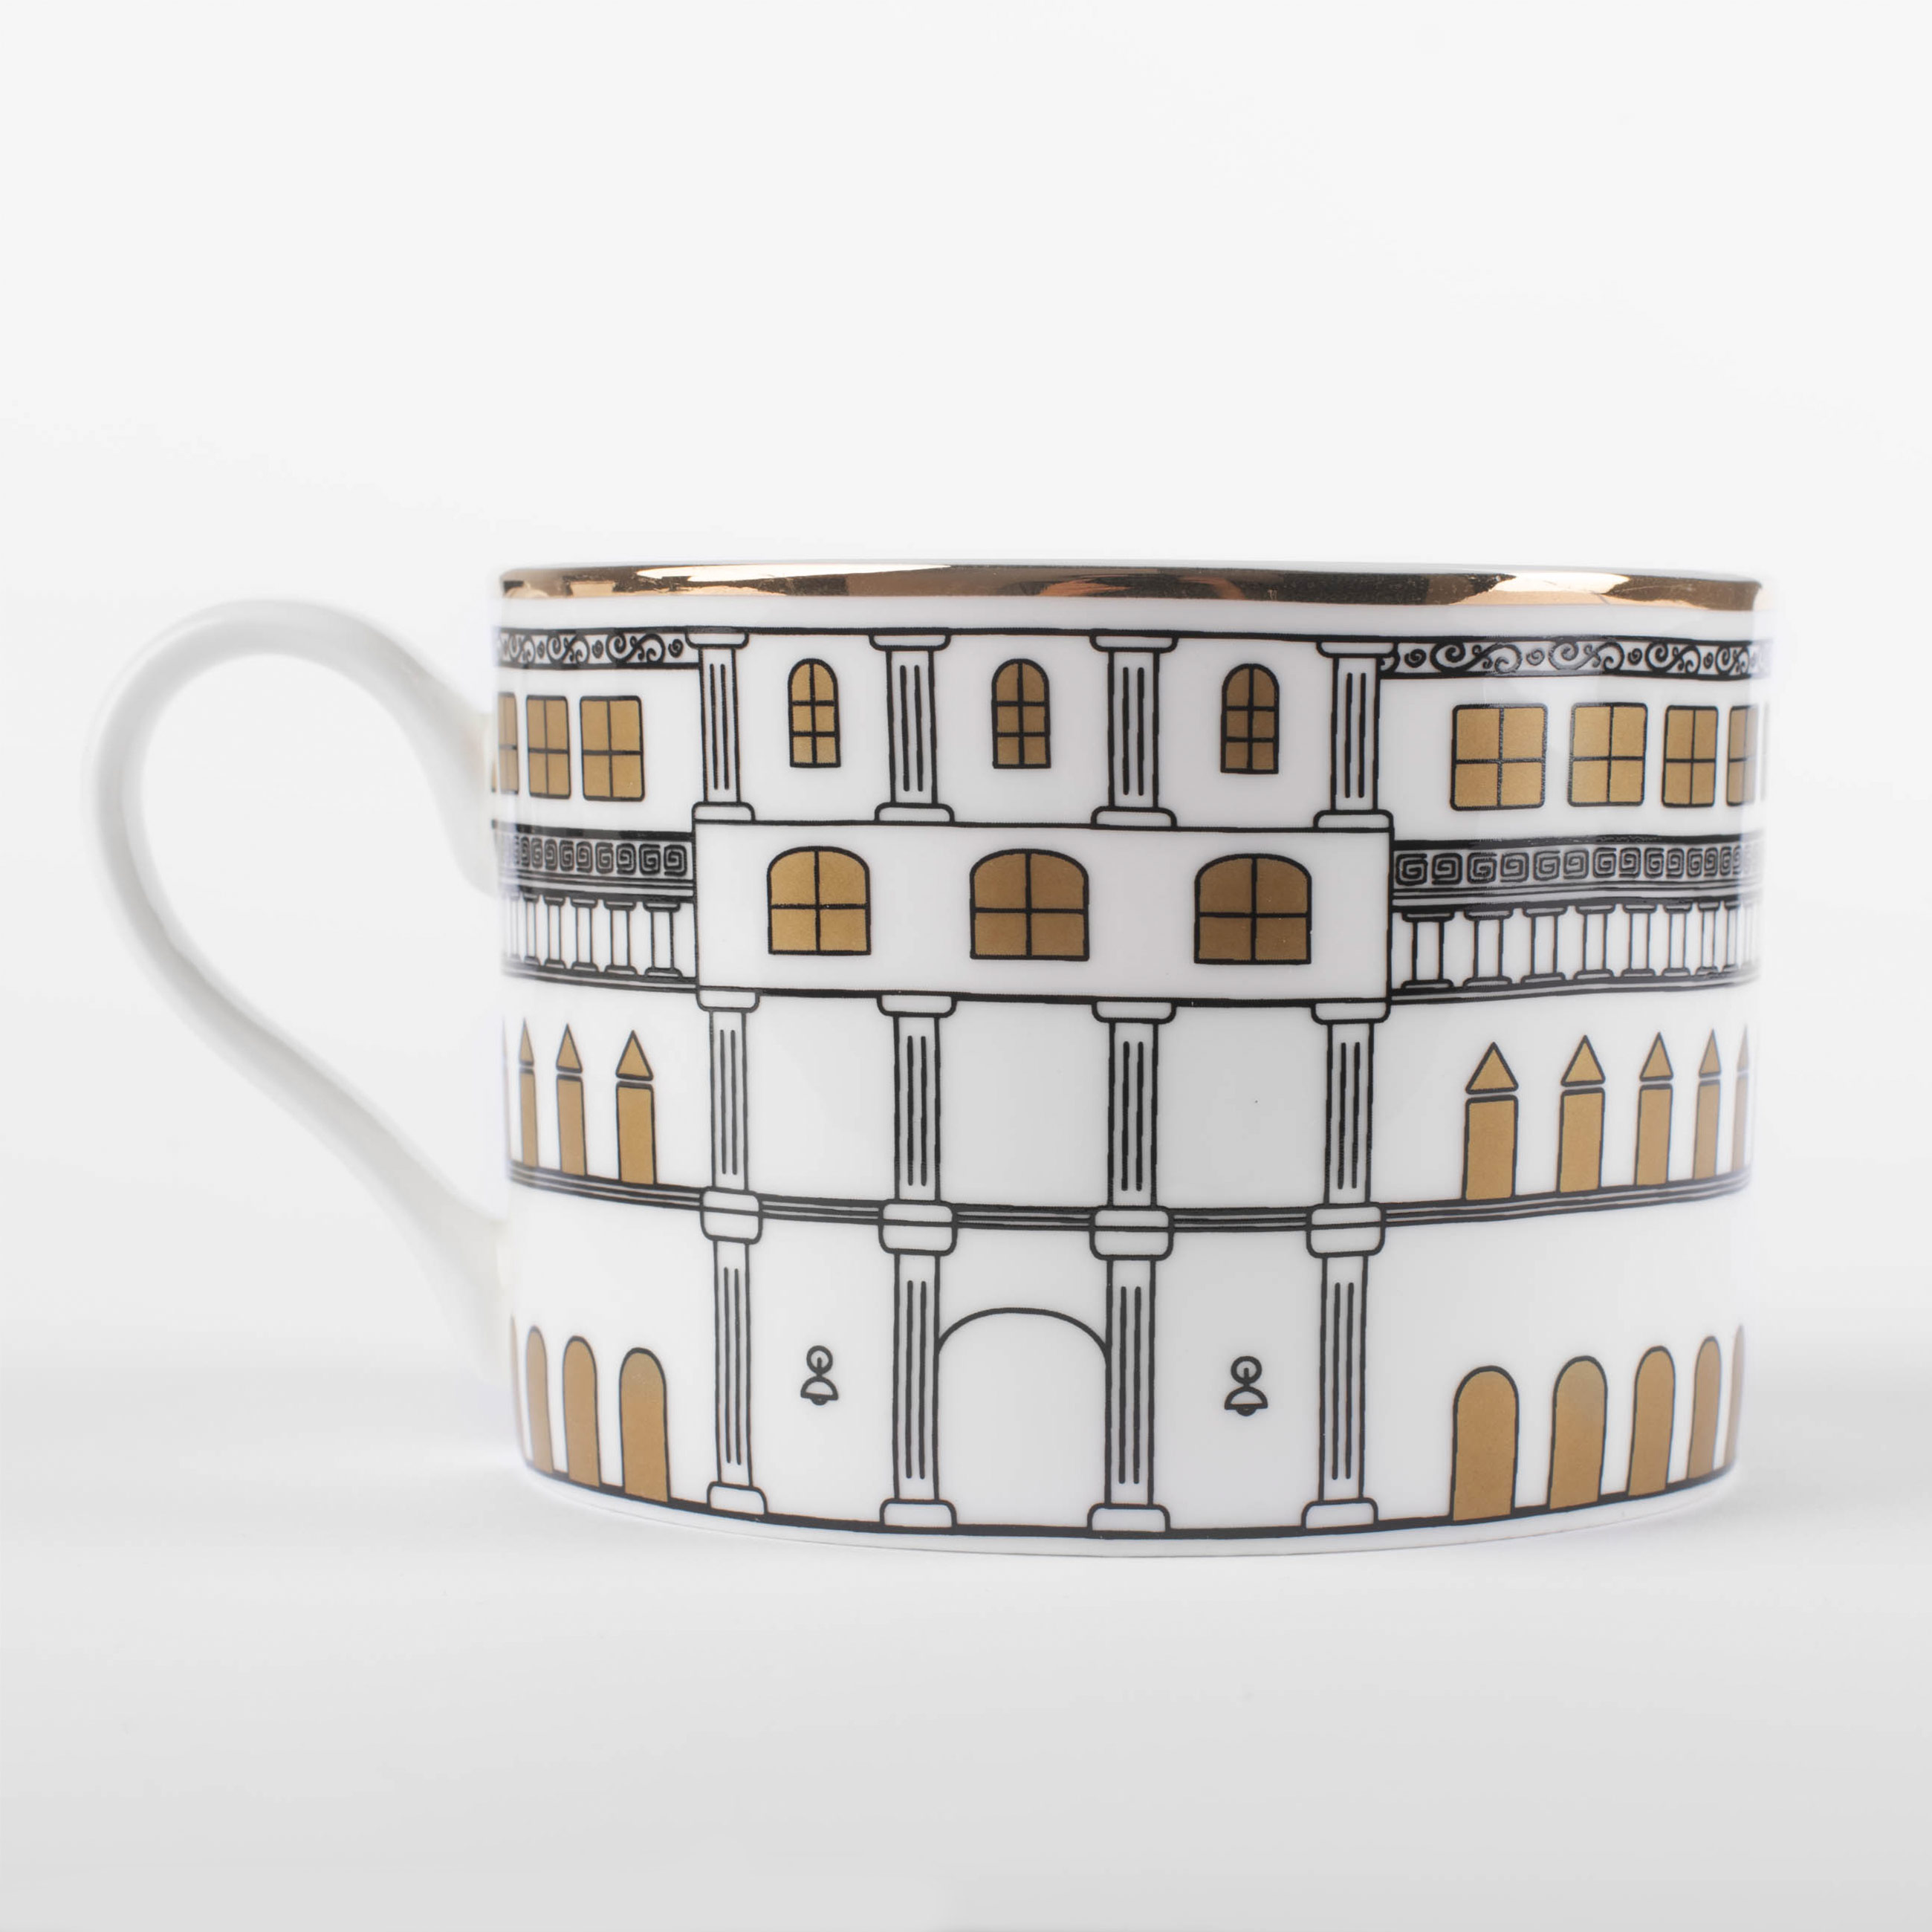 Пара чайная, 1 перс, 2 пр, 330 мл, фарфор F, белая, с золотистым кантом, Дом, House изображение № 4